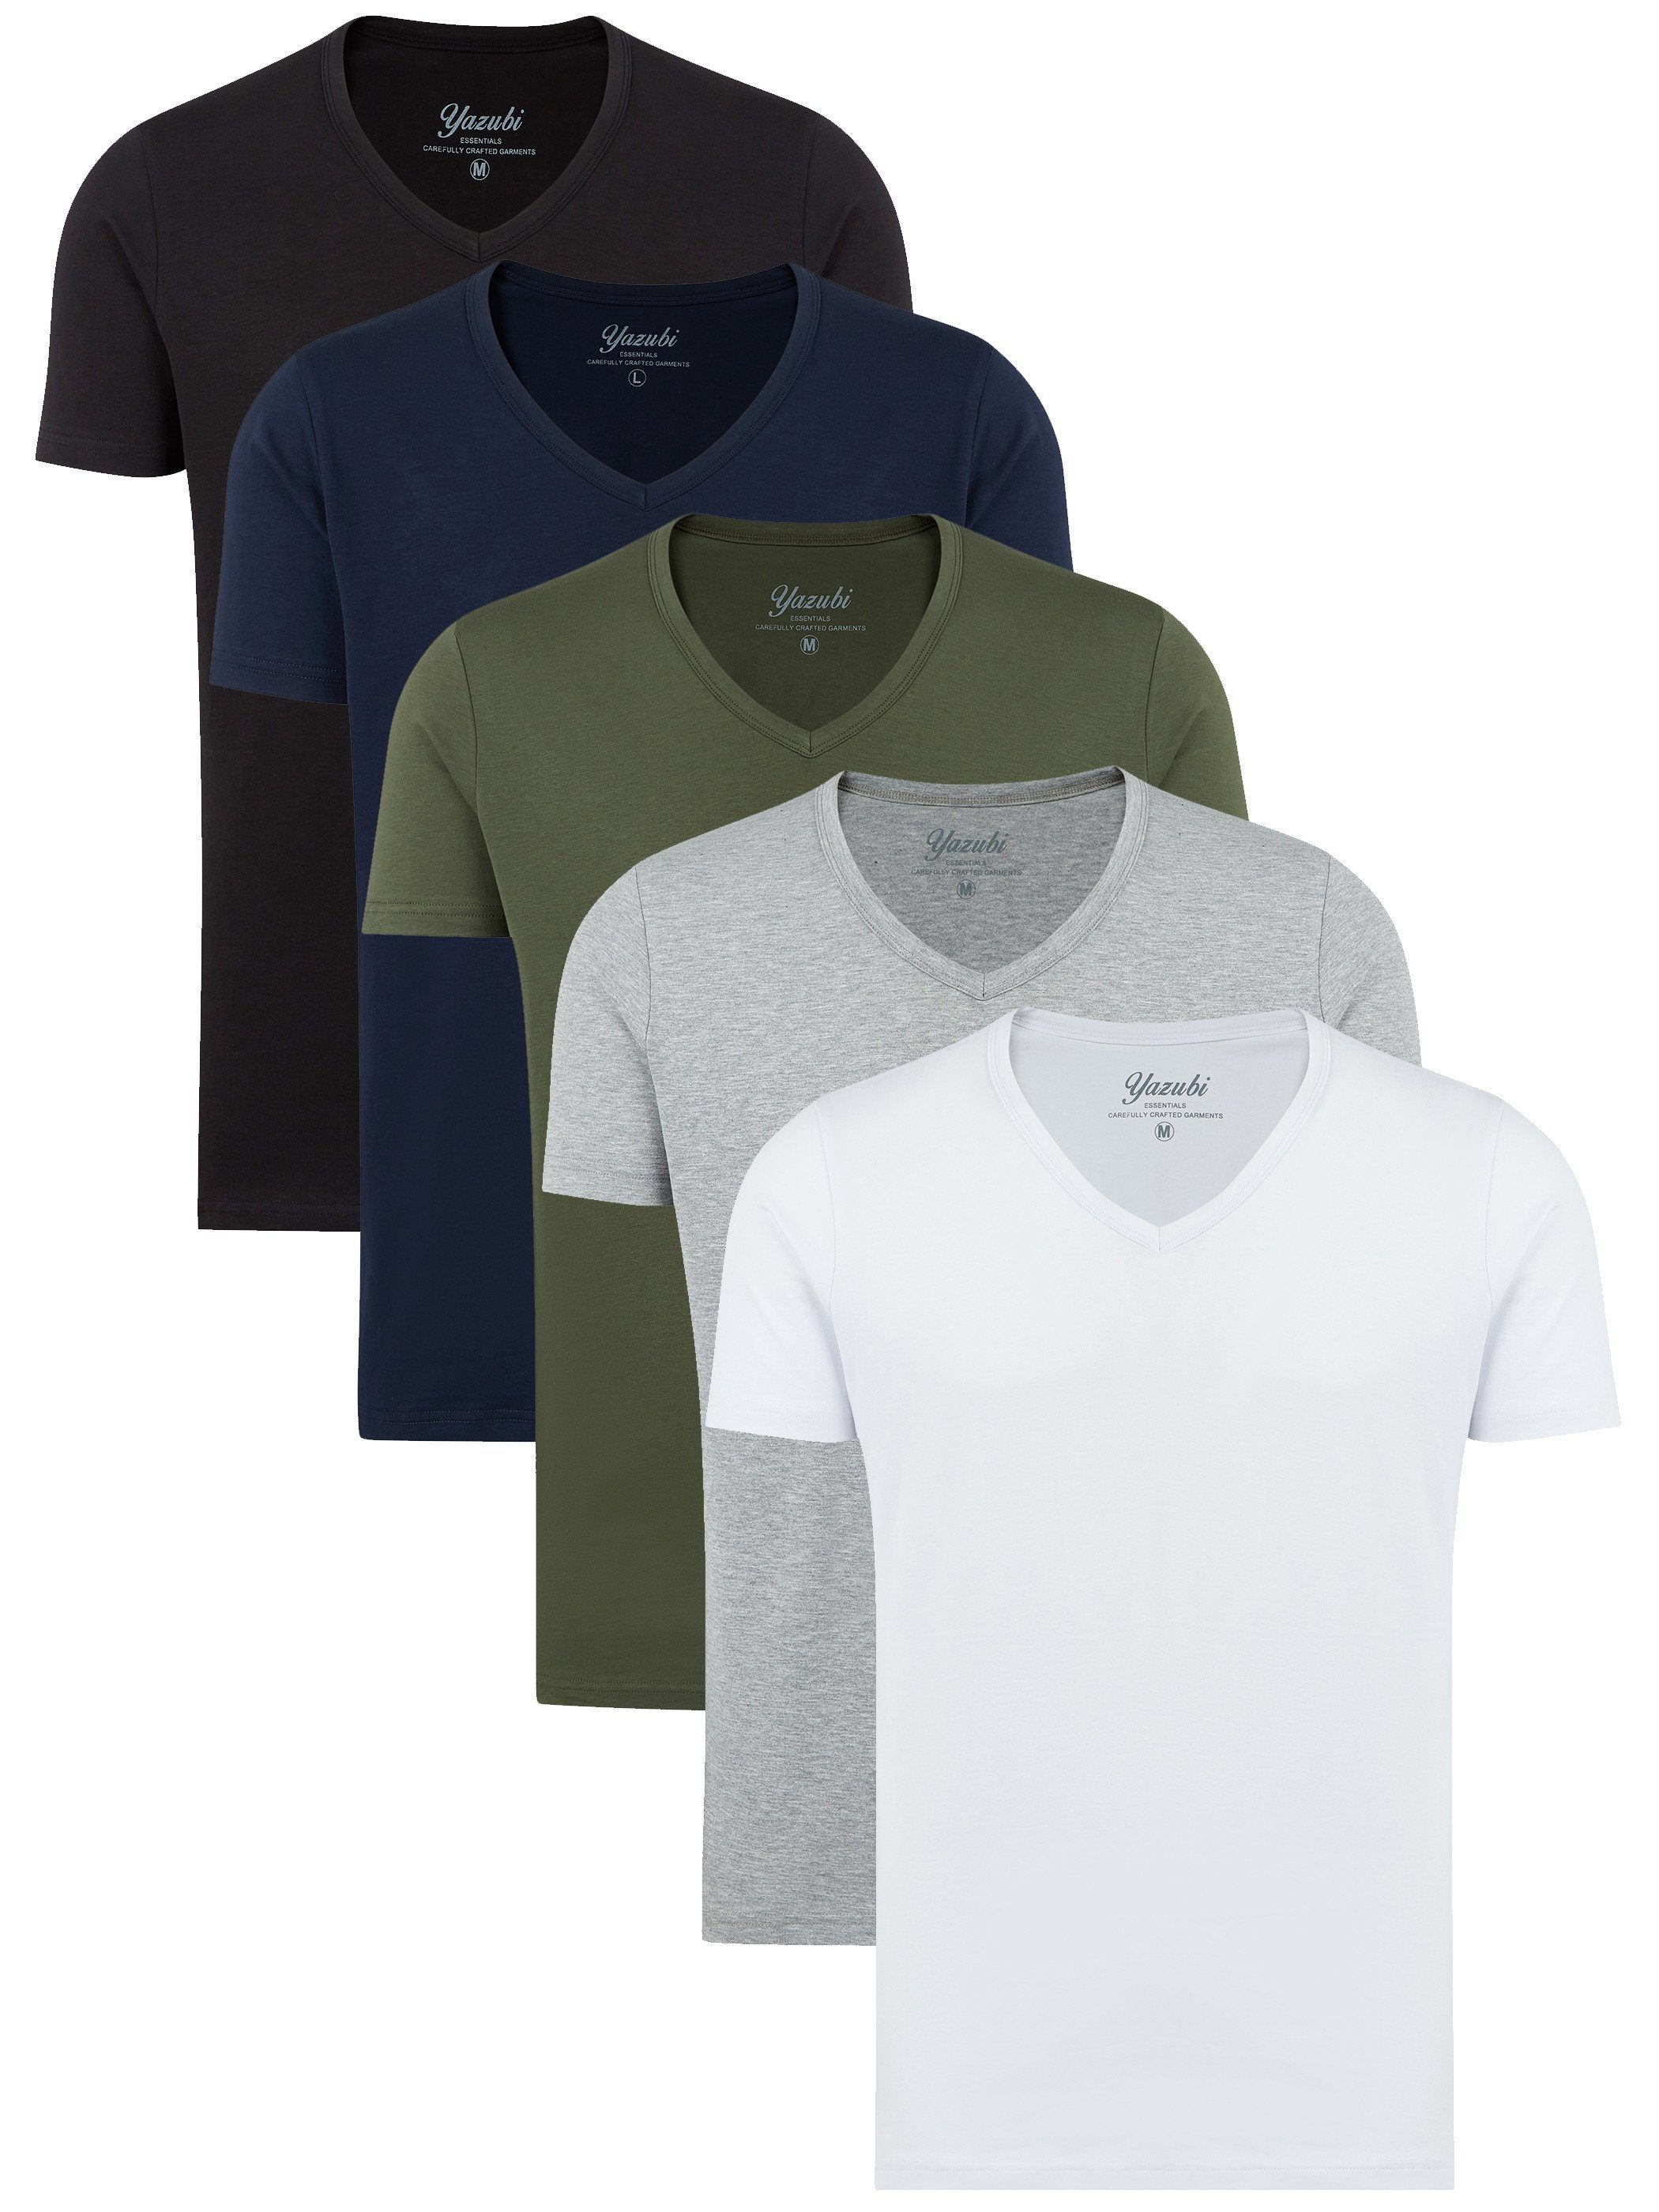 Shirt T-Shirt modisches mit 5er-Pack) Mythic T-shirt V-Ausschnitt (Mix1) bequemes Mix (Spar-Set, Yazubi